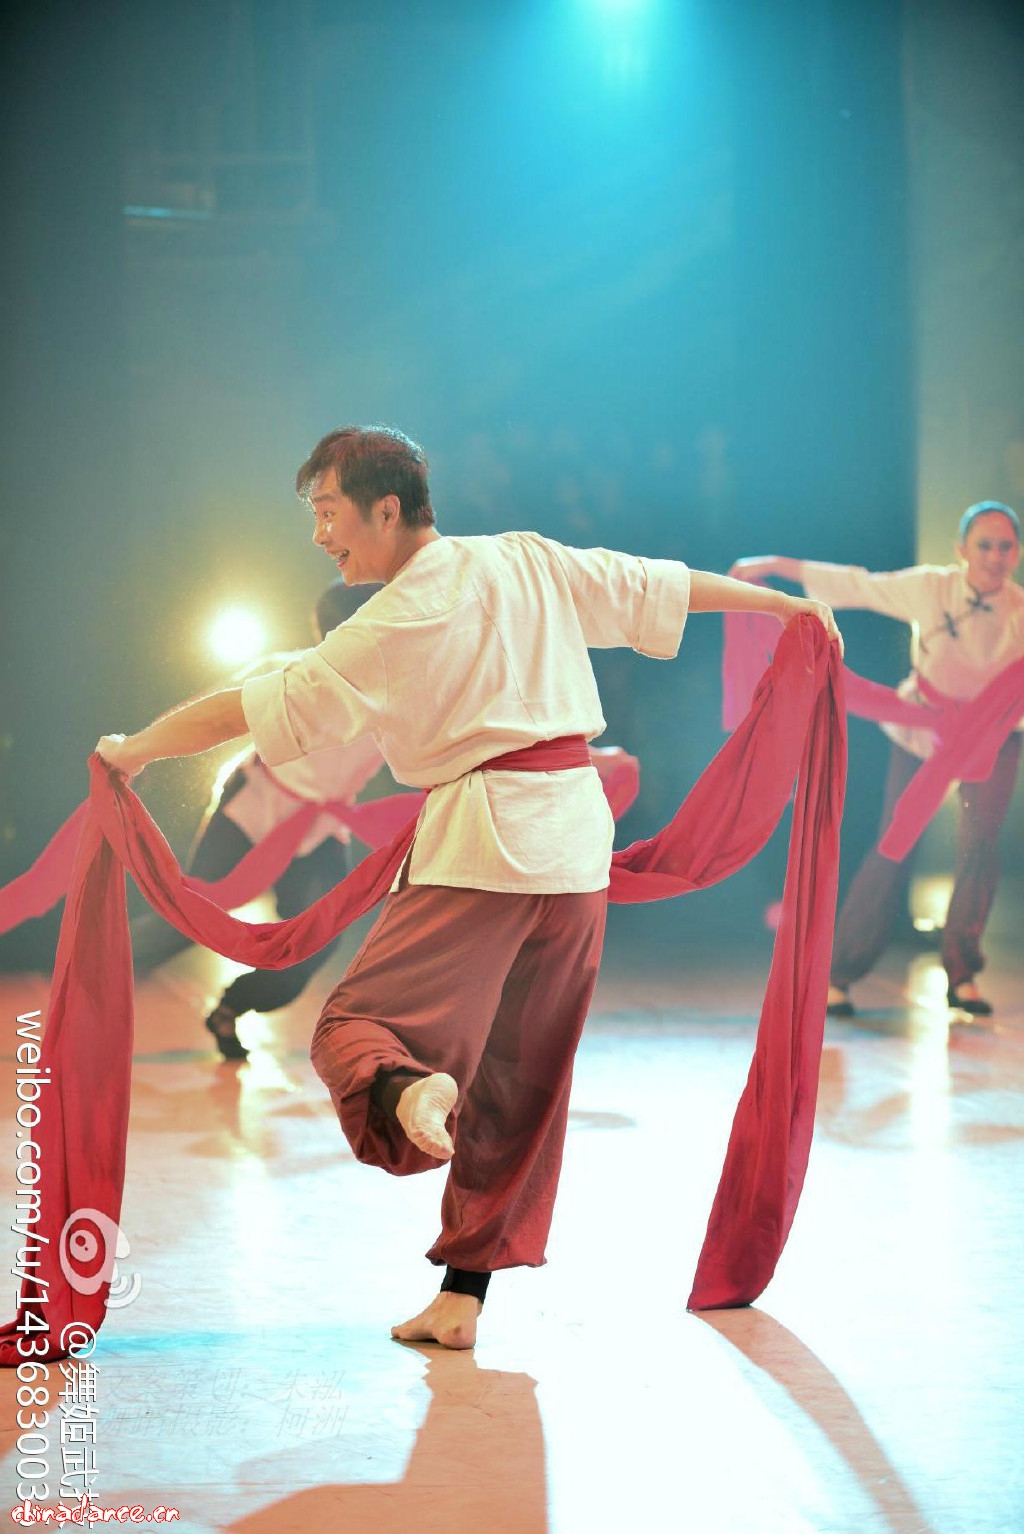 汉族民间舞群舞《一个扭秧歌的人》“春晖甲子·大美不言”舞蹈专场晚会 - Powered by Discuz!